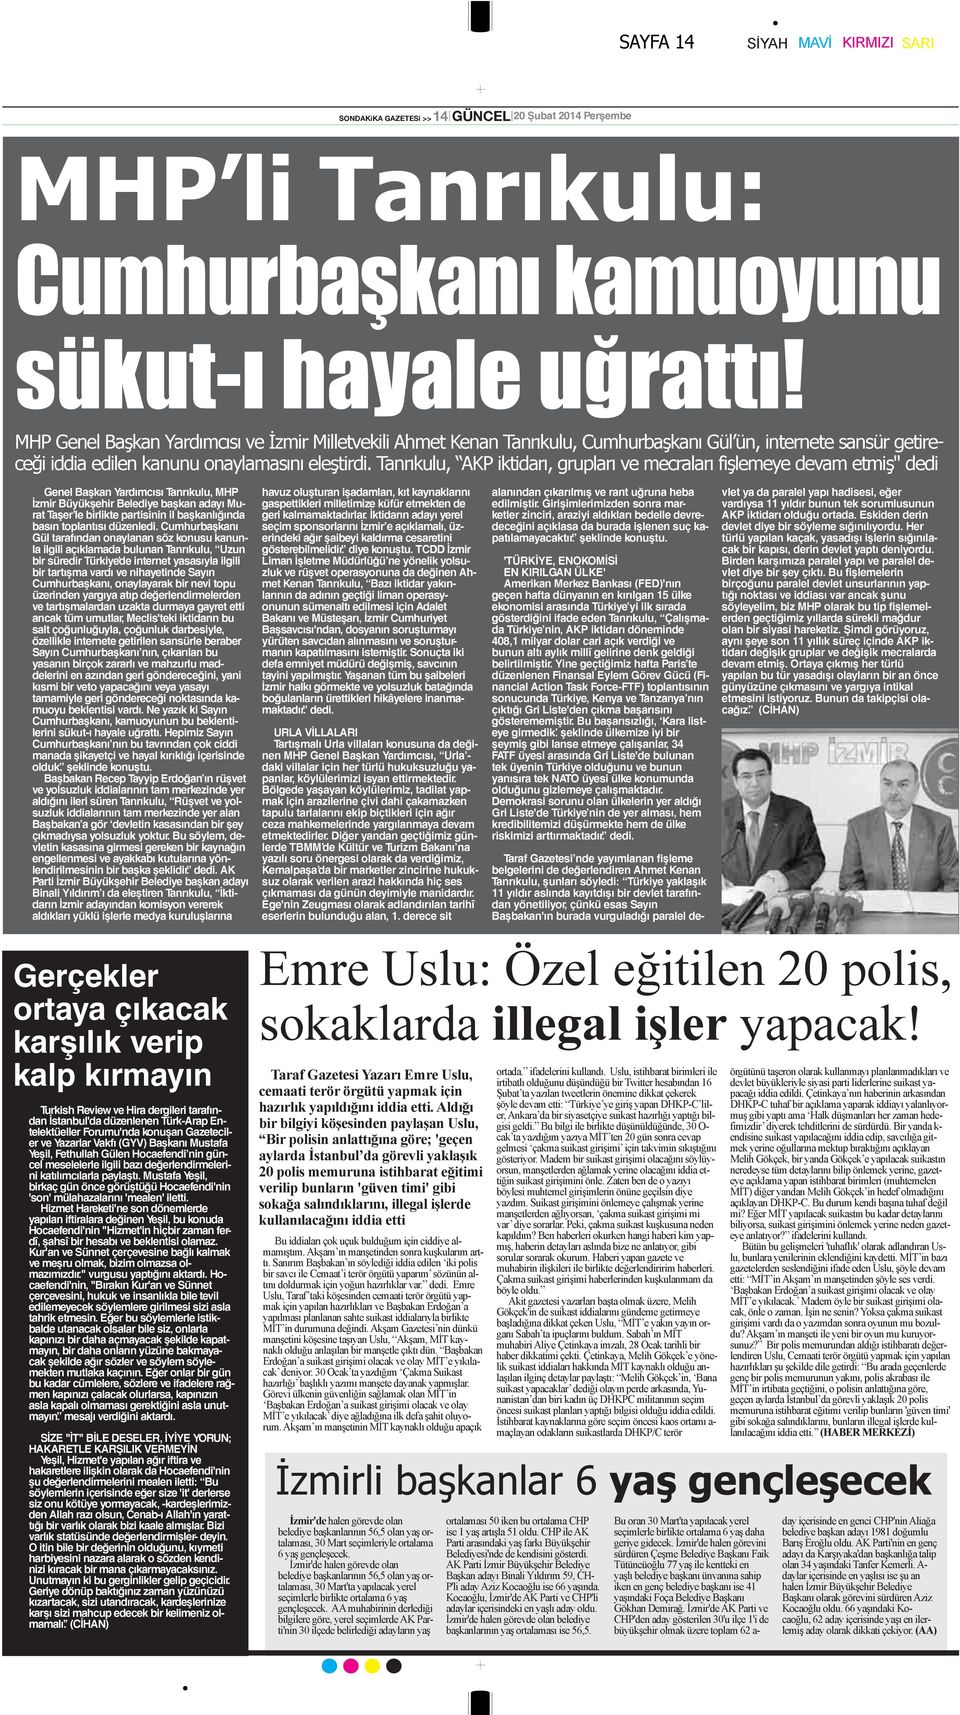 Tanrıkulu, AKP iktidarı, grupları ve mecraları fişlemeye devam etmiş" dedi Genel Başkan Yardımcısı Tanrıkulu, MHP İzmir Büyükşehir Belediye başkan adayı Murat Taşer le birlikte partisinin il